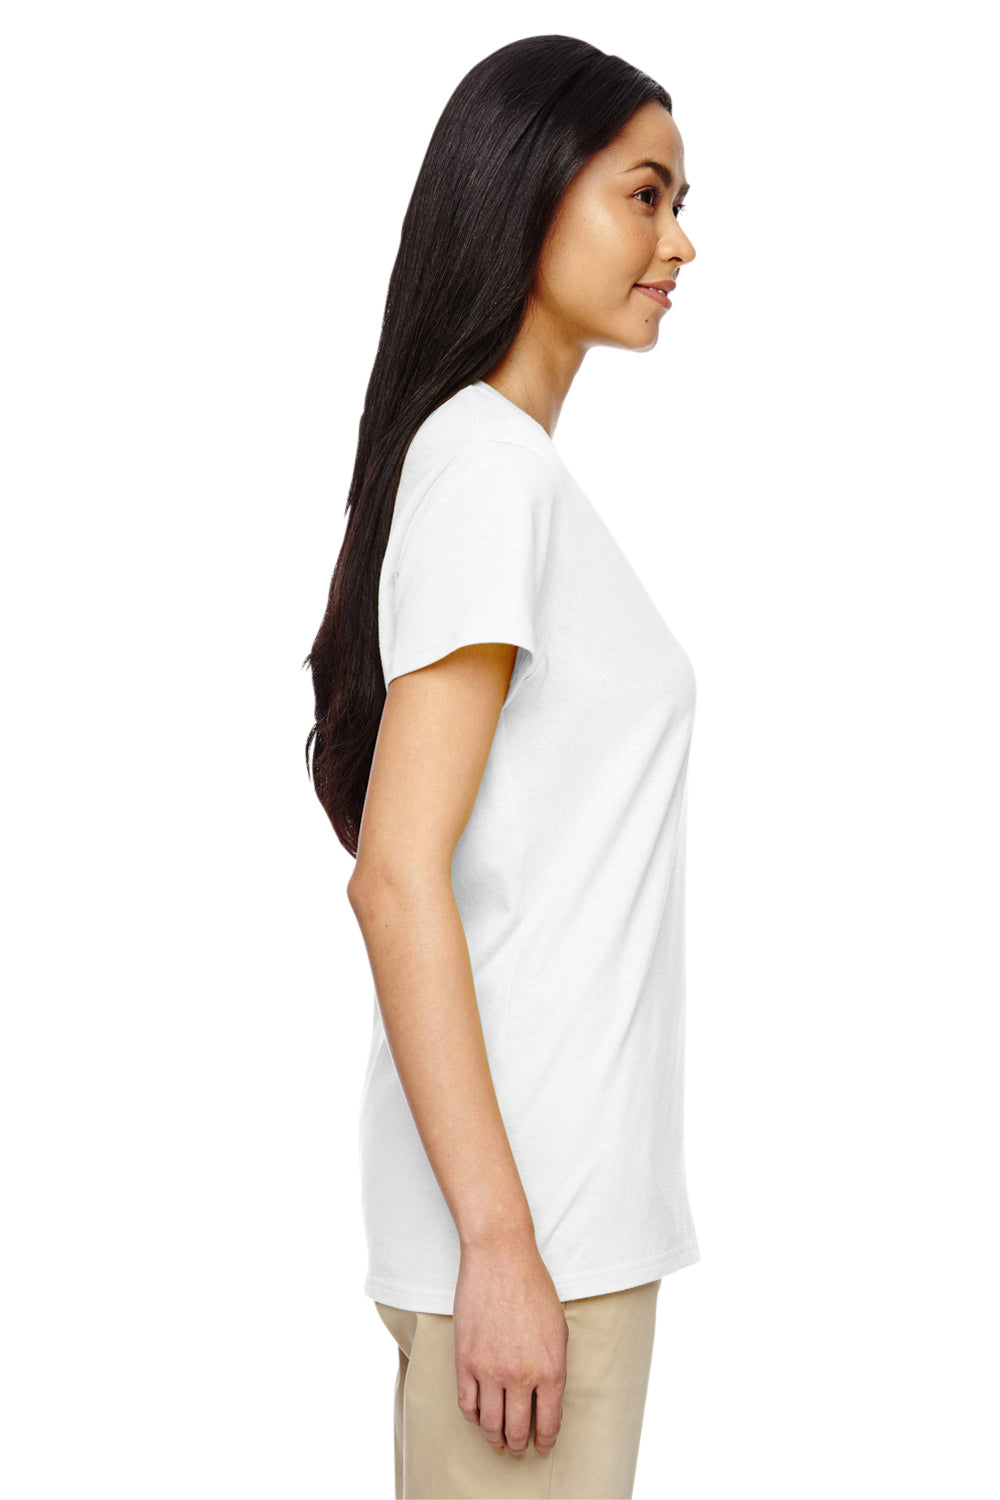 Gildan G500VL Womens Short Sleeve V-Neck T-Shirt White Side